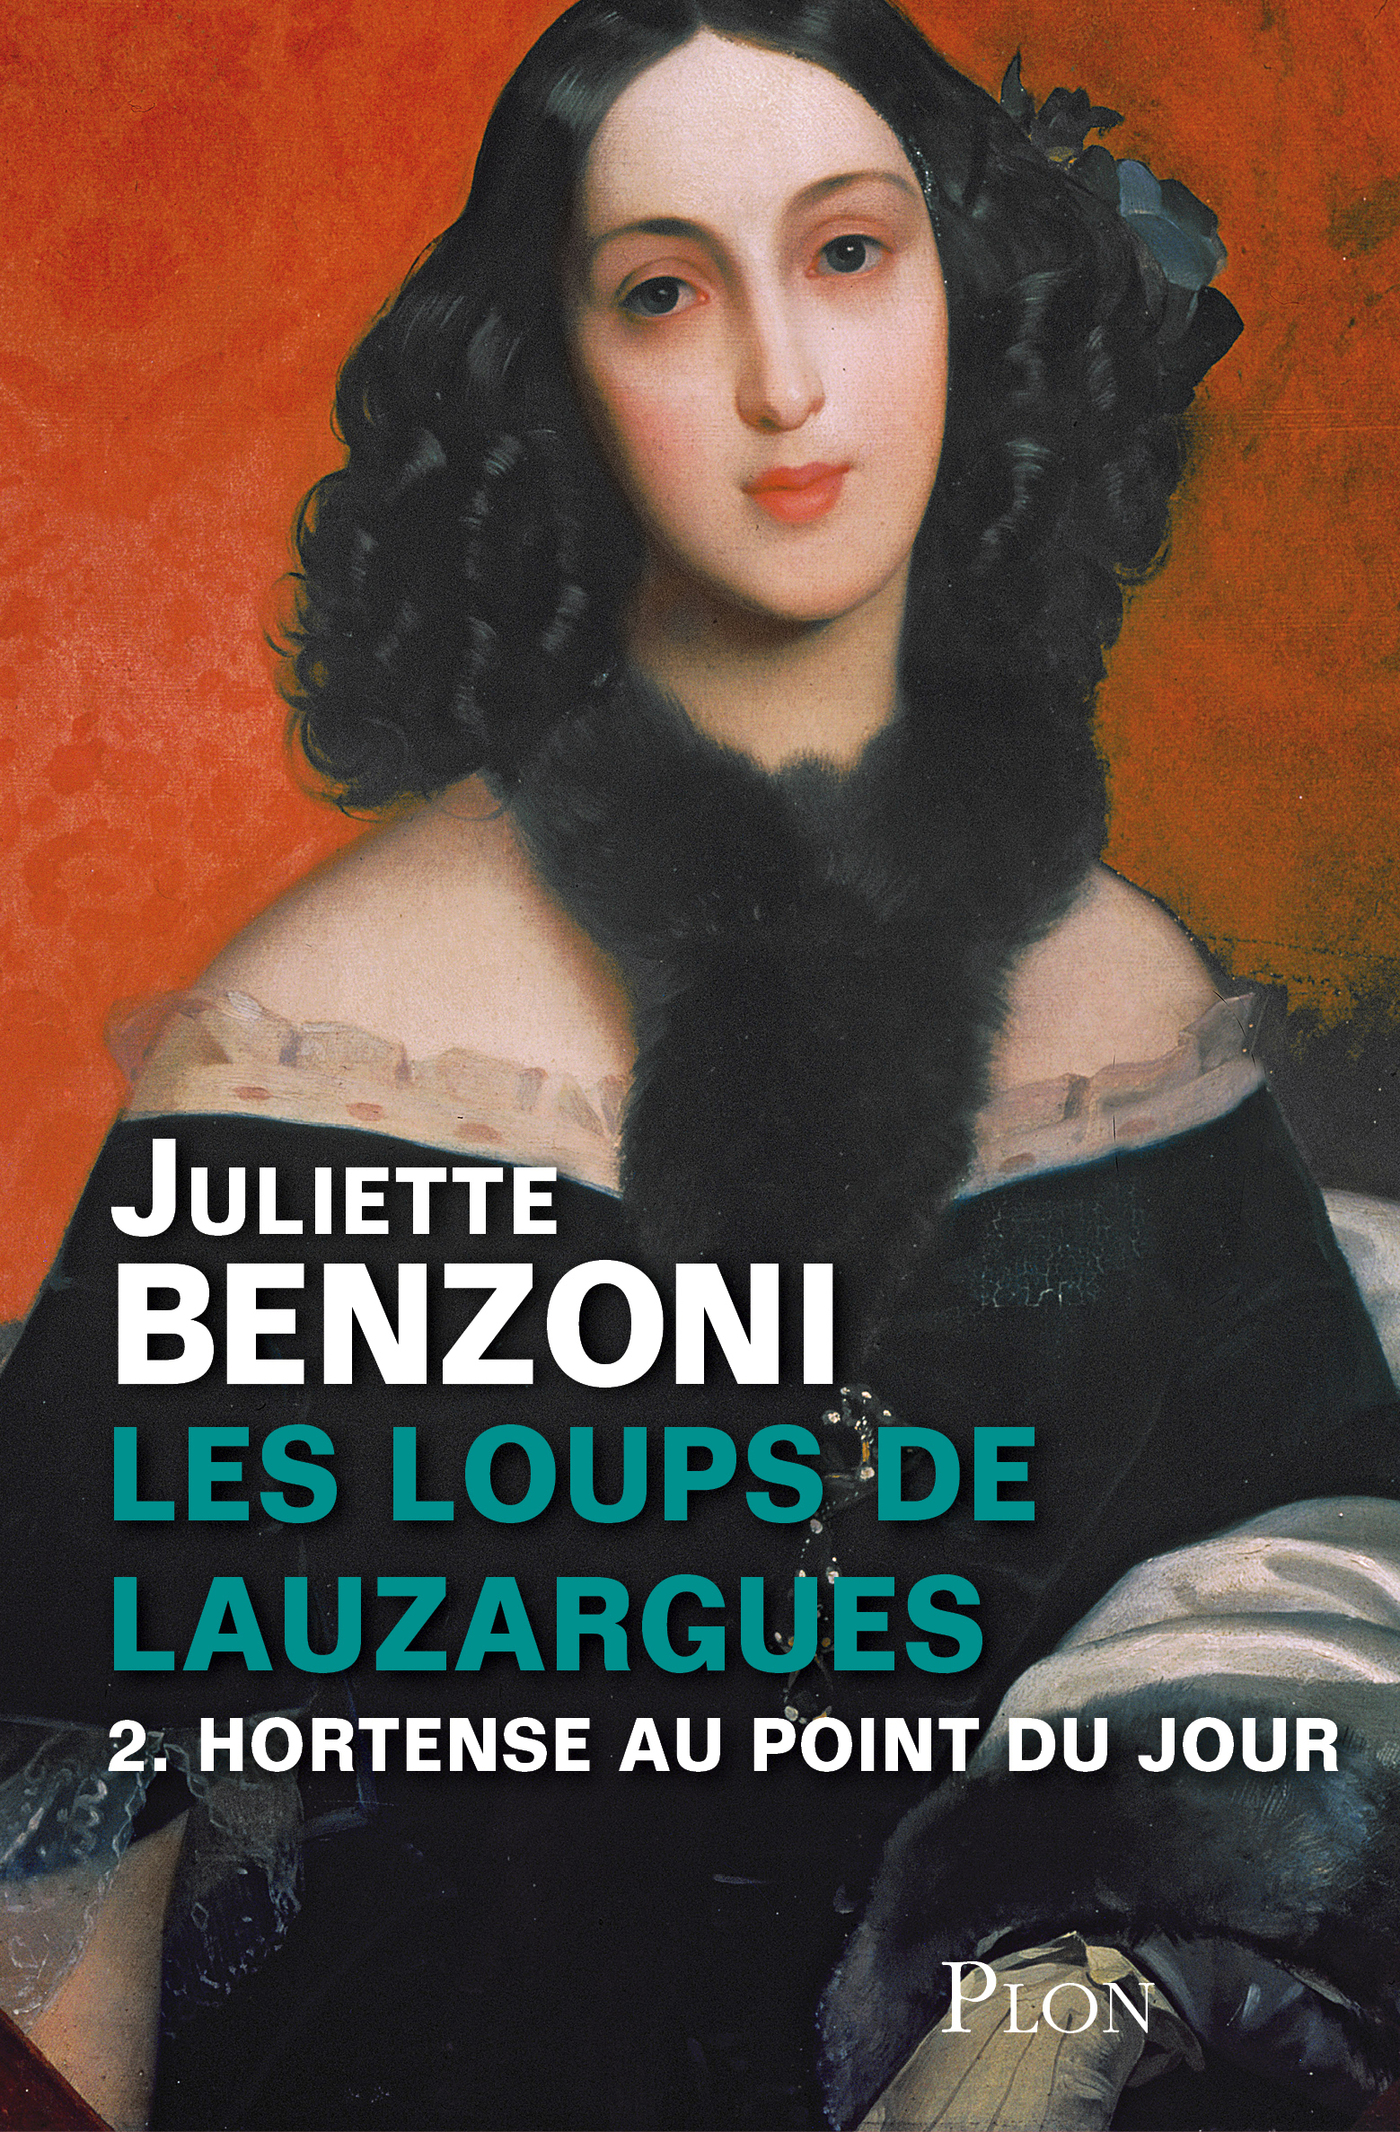 Afficher "Les Loups de Lauzargues tome 2 - Hortense au point du jour"